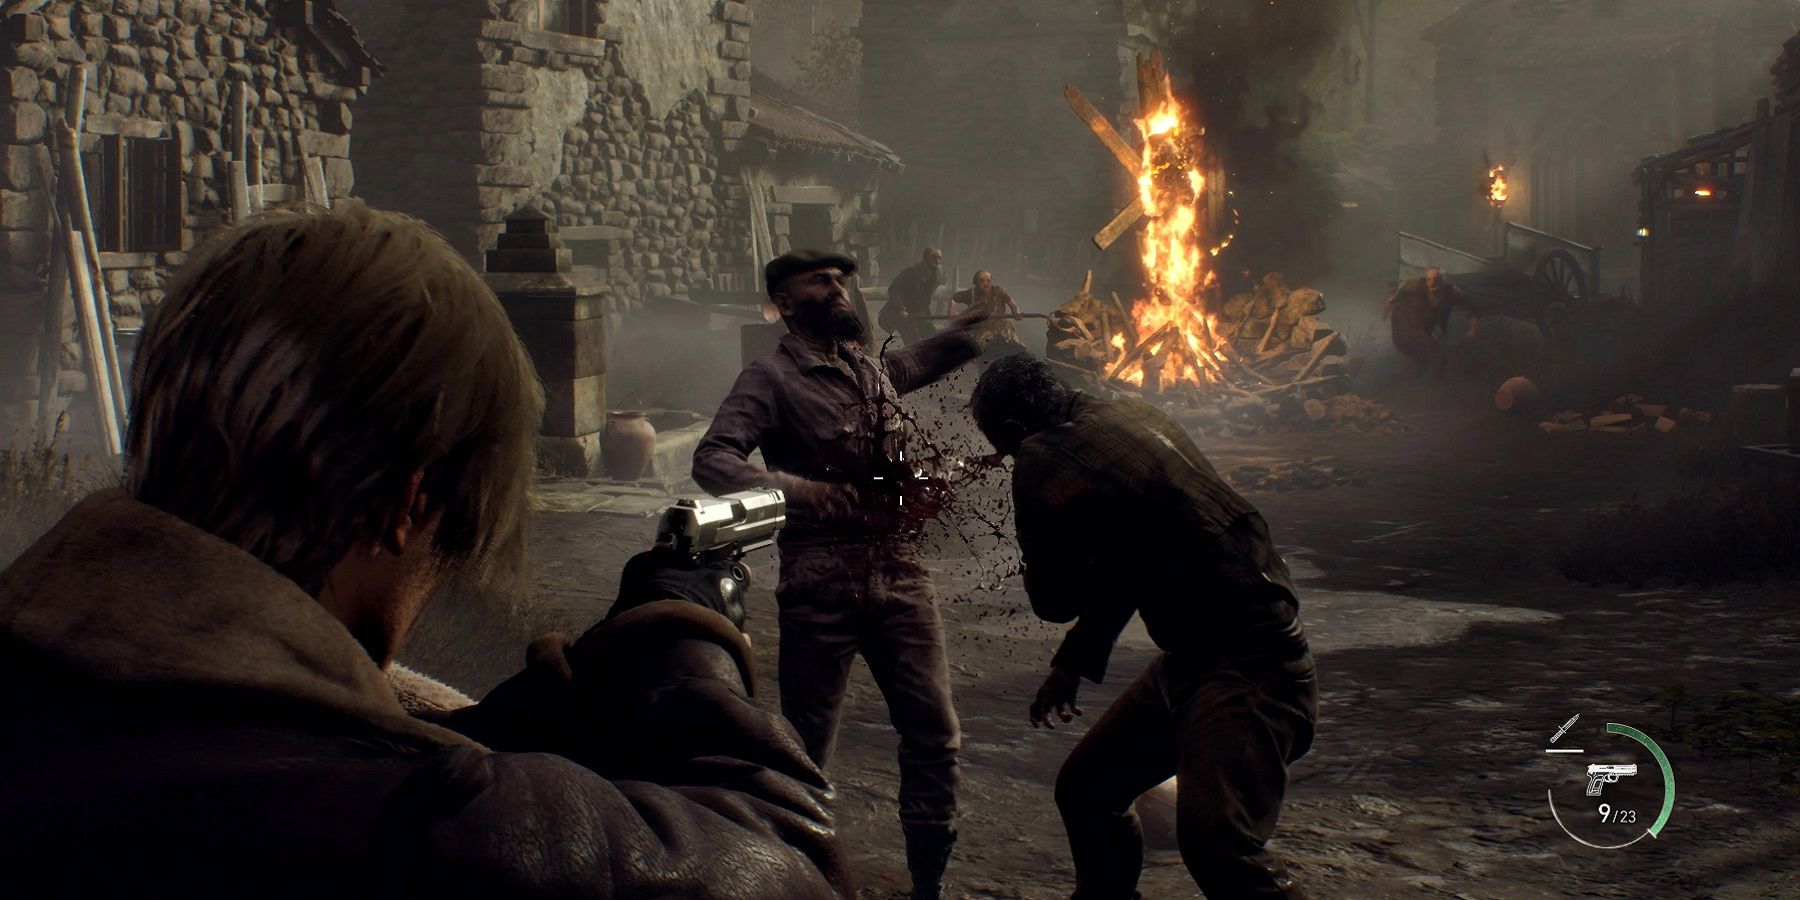 Imagem do remake de Resident Evil 4 mostrando Leon Kennedy atirando em alguns Ganados durante a seção da vila.